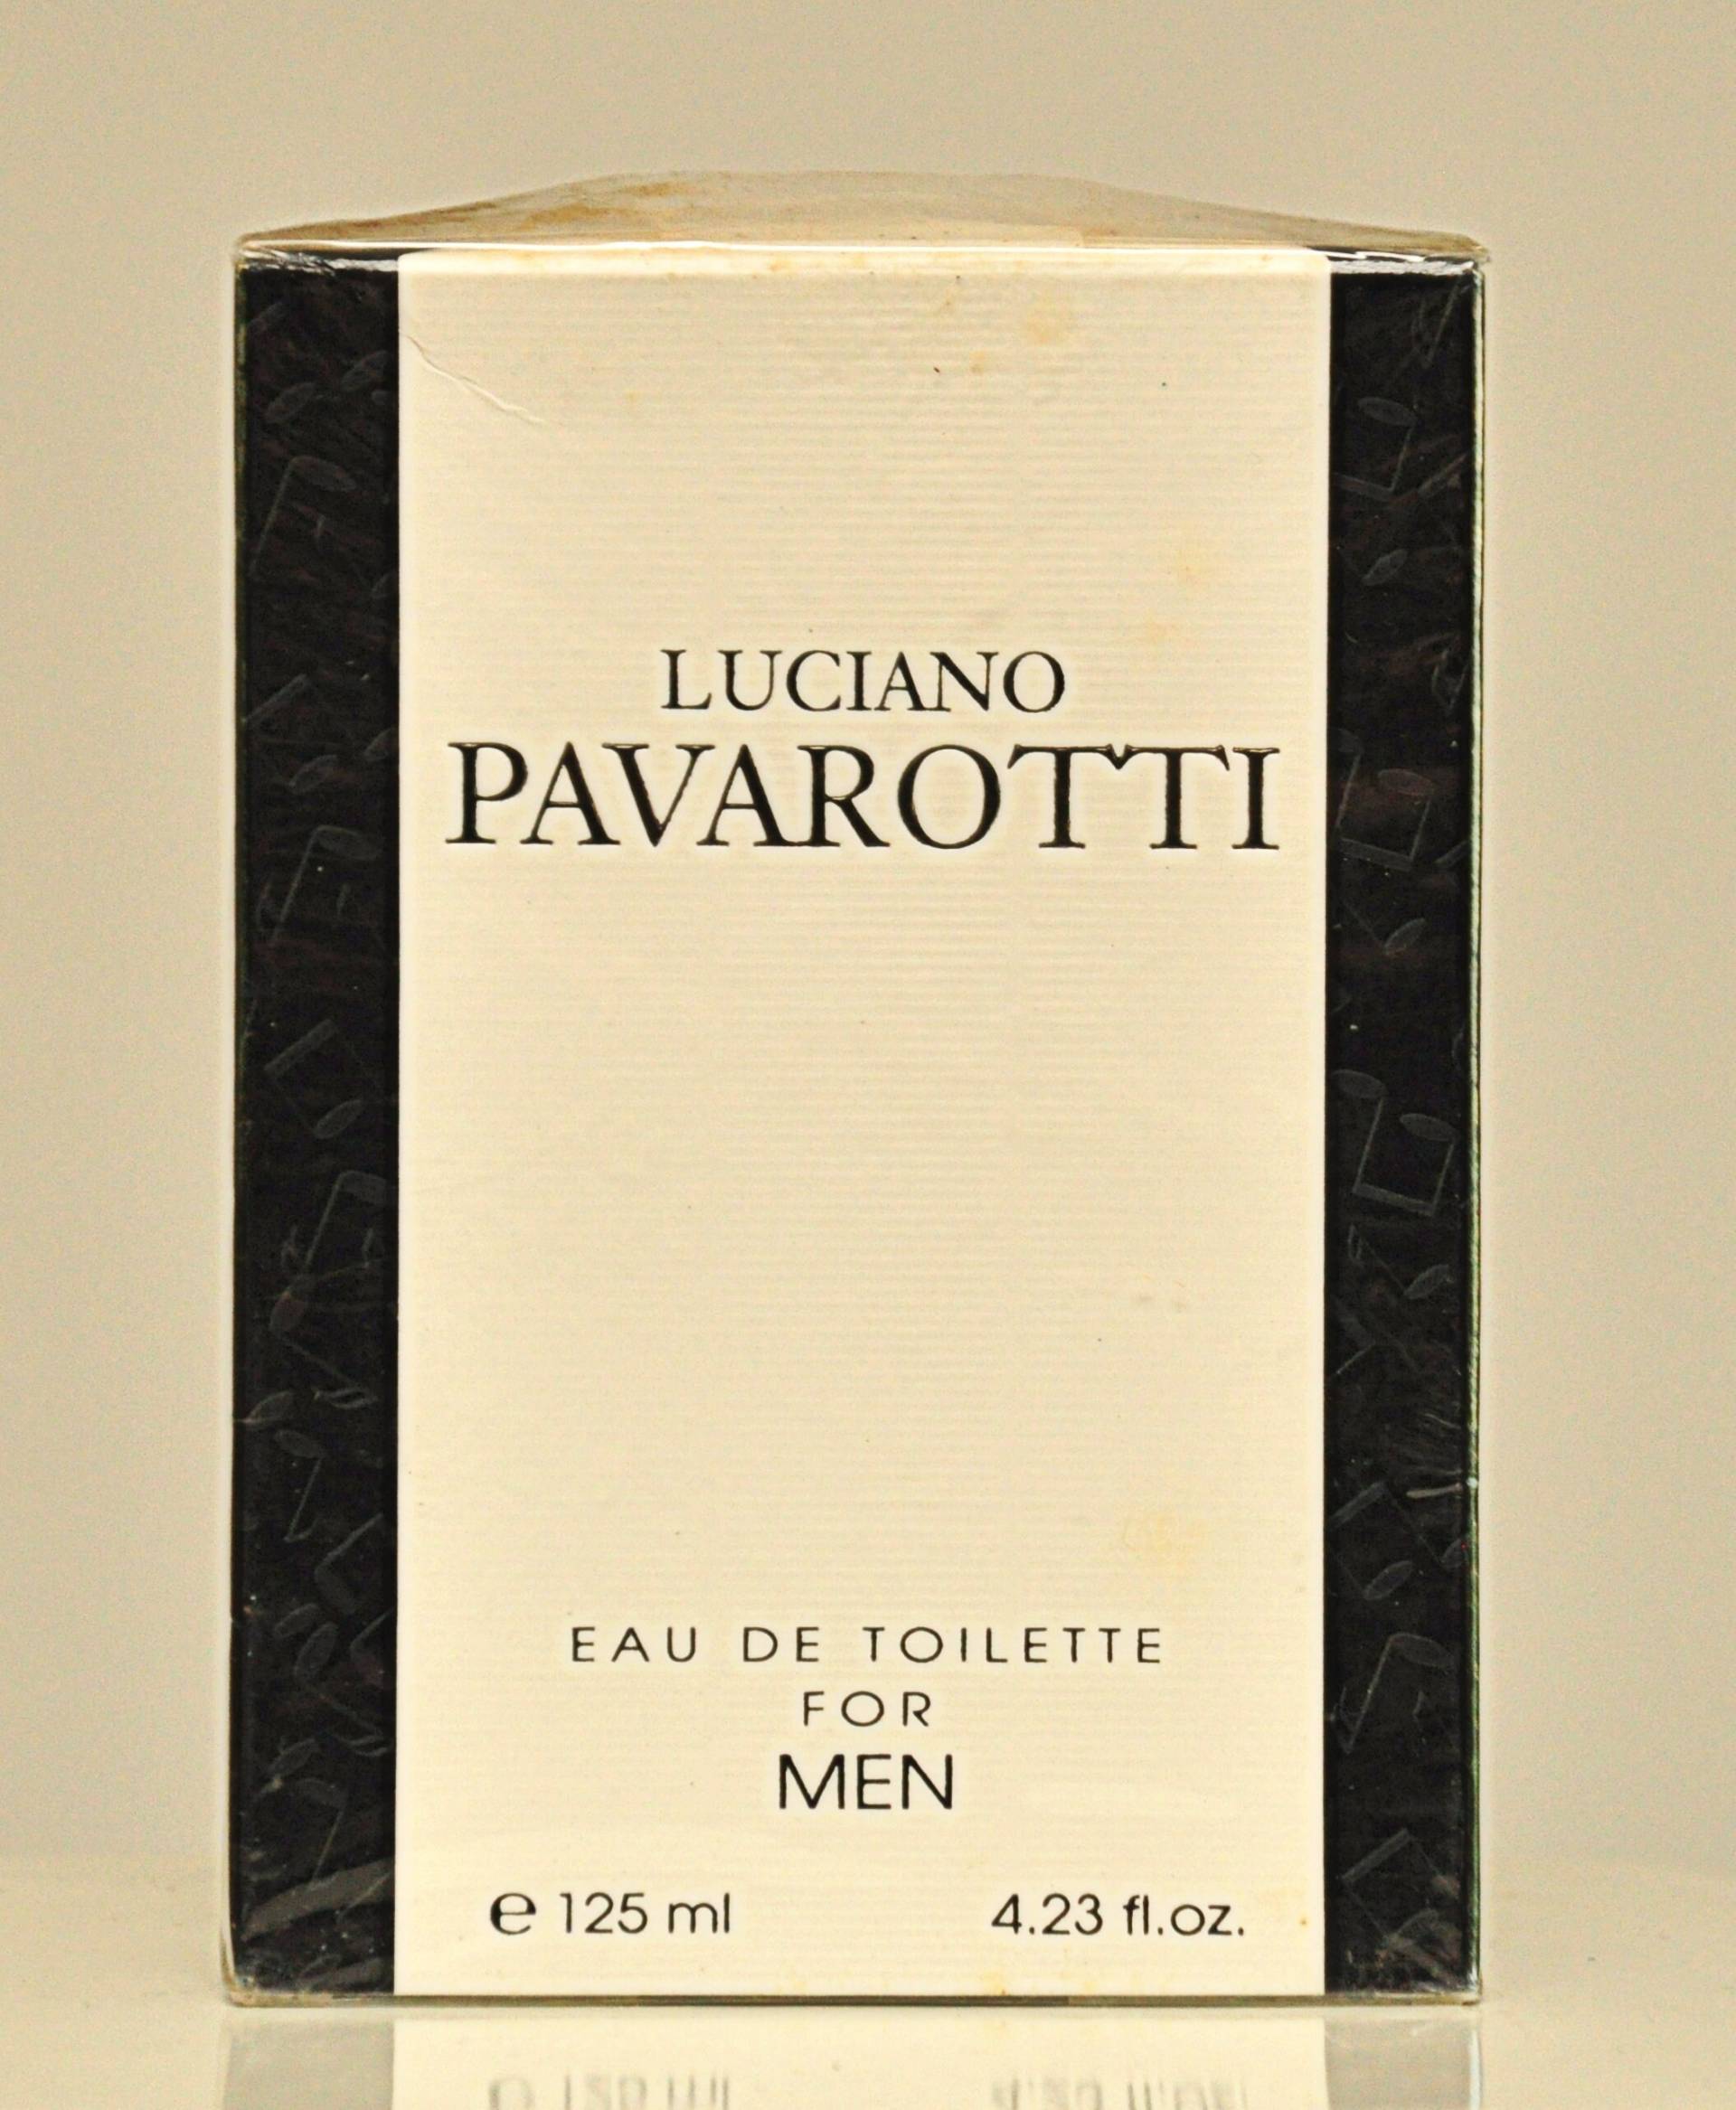 Luciano Pavarotti Von Eau De Toilette Für Männer Edt 125Ml Splash Non Spray Parfüm Mann Rare Vintage 1994 von YourVintagePerfume